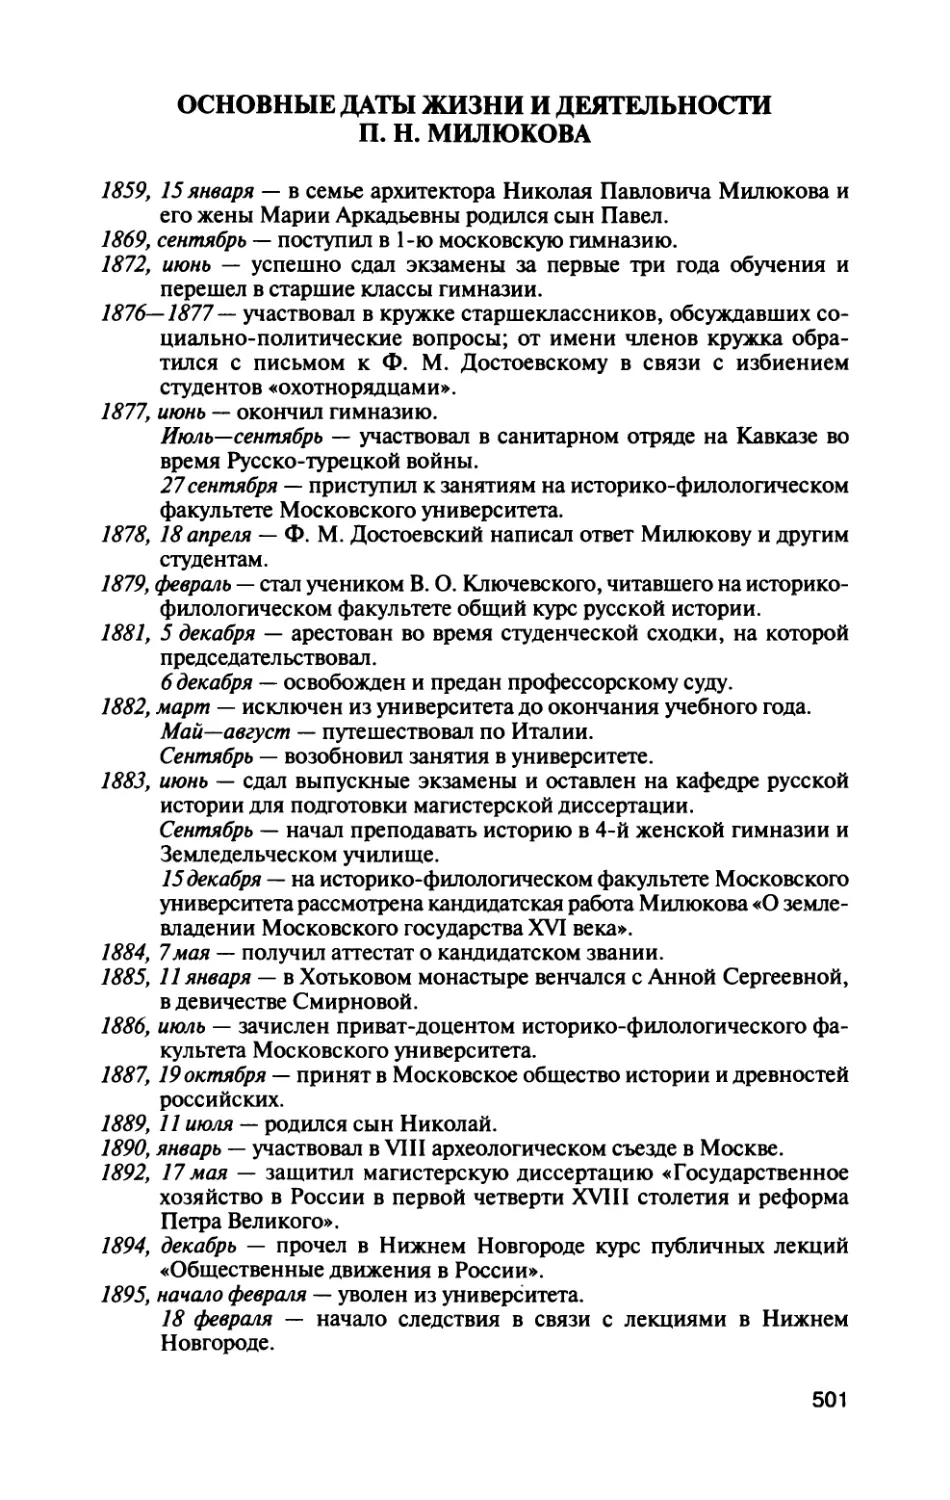 Основные даты жизни и деятельности П. Н. Милюкова